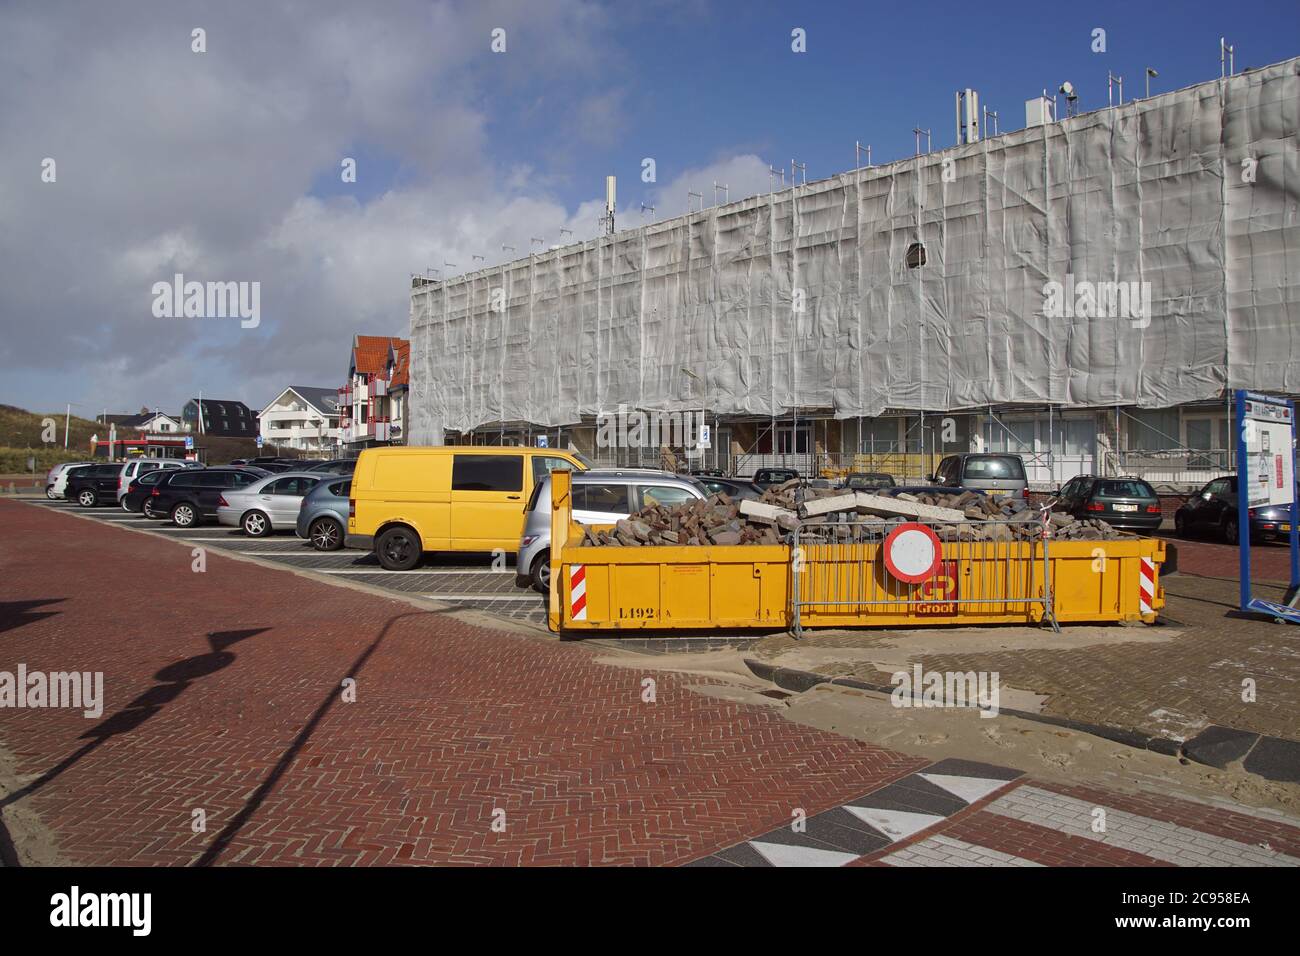 Ristrutturazione di appartamenti (Alexanderflat) nel villaggio olandese di Bergen aan Zee. Ponteggio con rete di sicurezza/protezione anticaduta grigia. Olanda, marzo Foto Stock